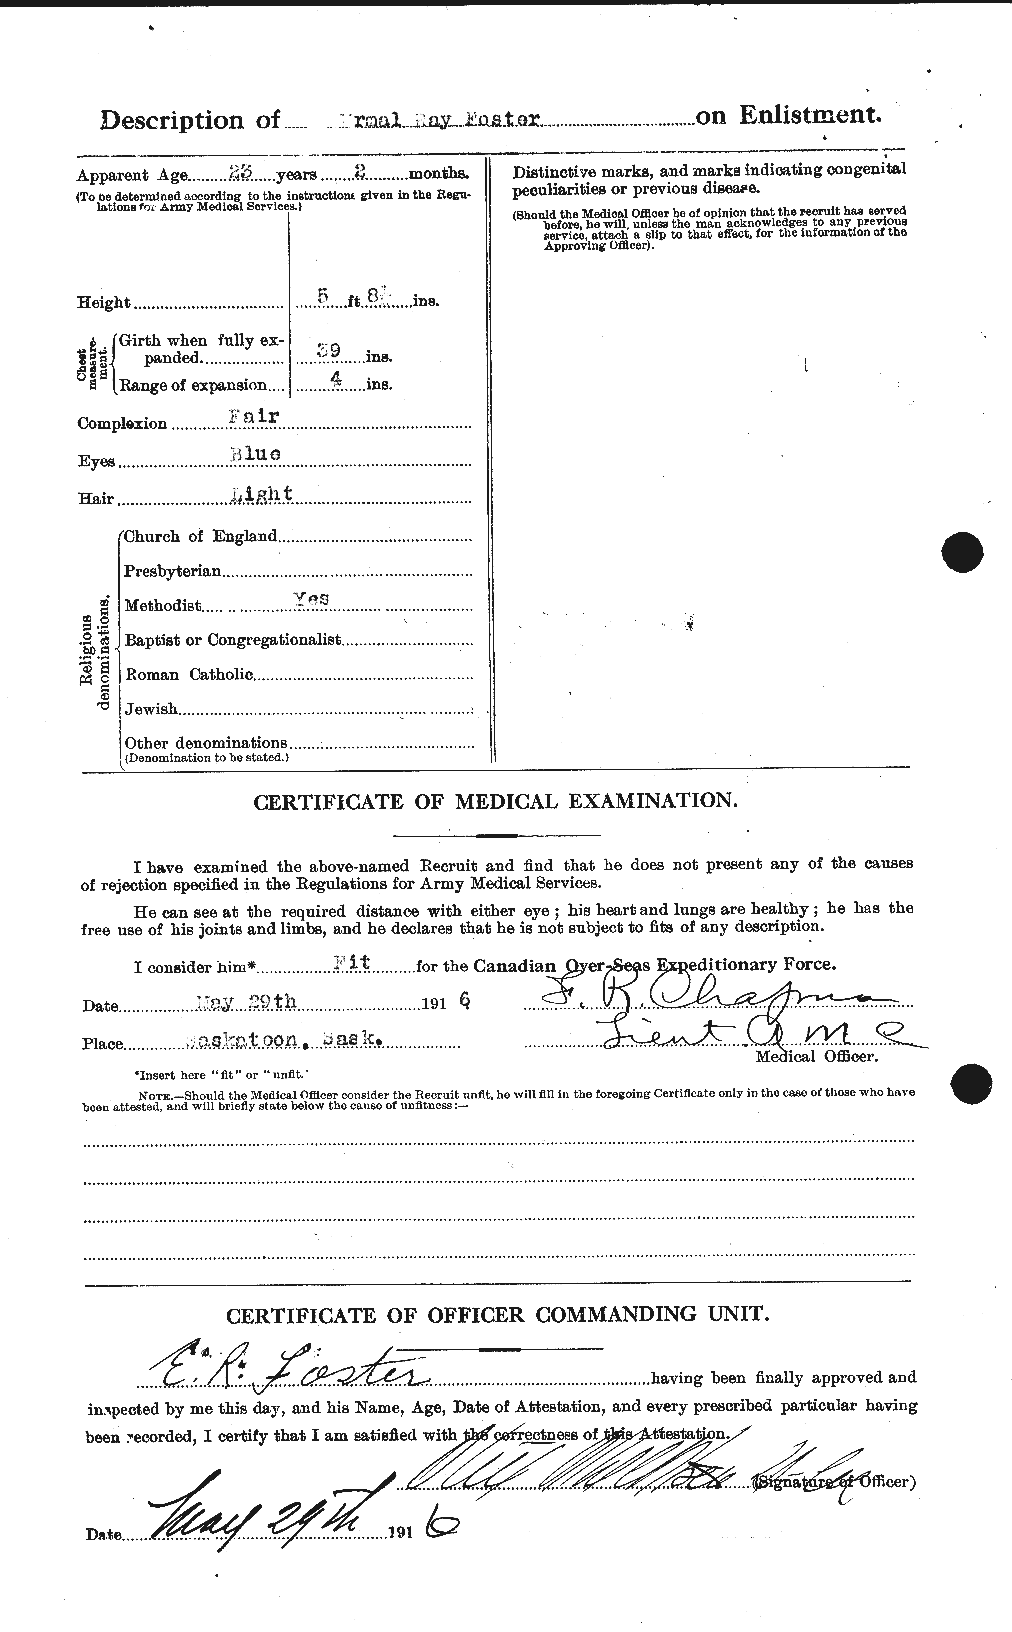 Dossiers du Personnel de la Première Guerre mondiale - CEC 330599b